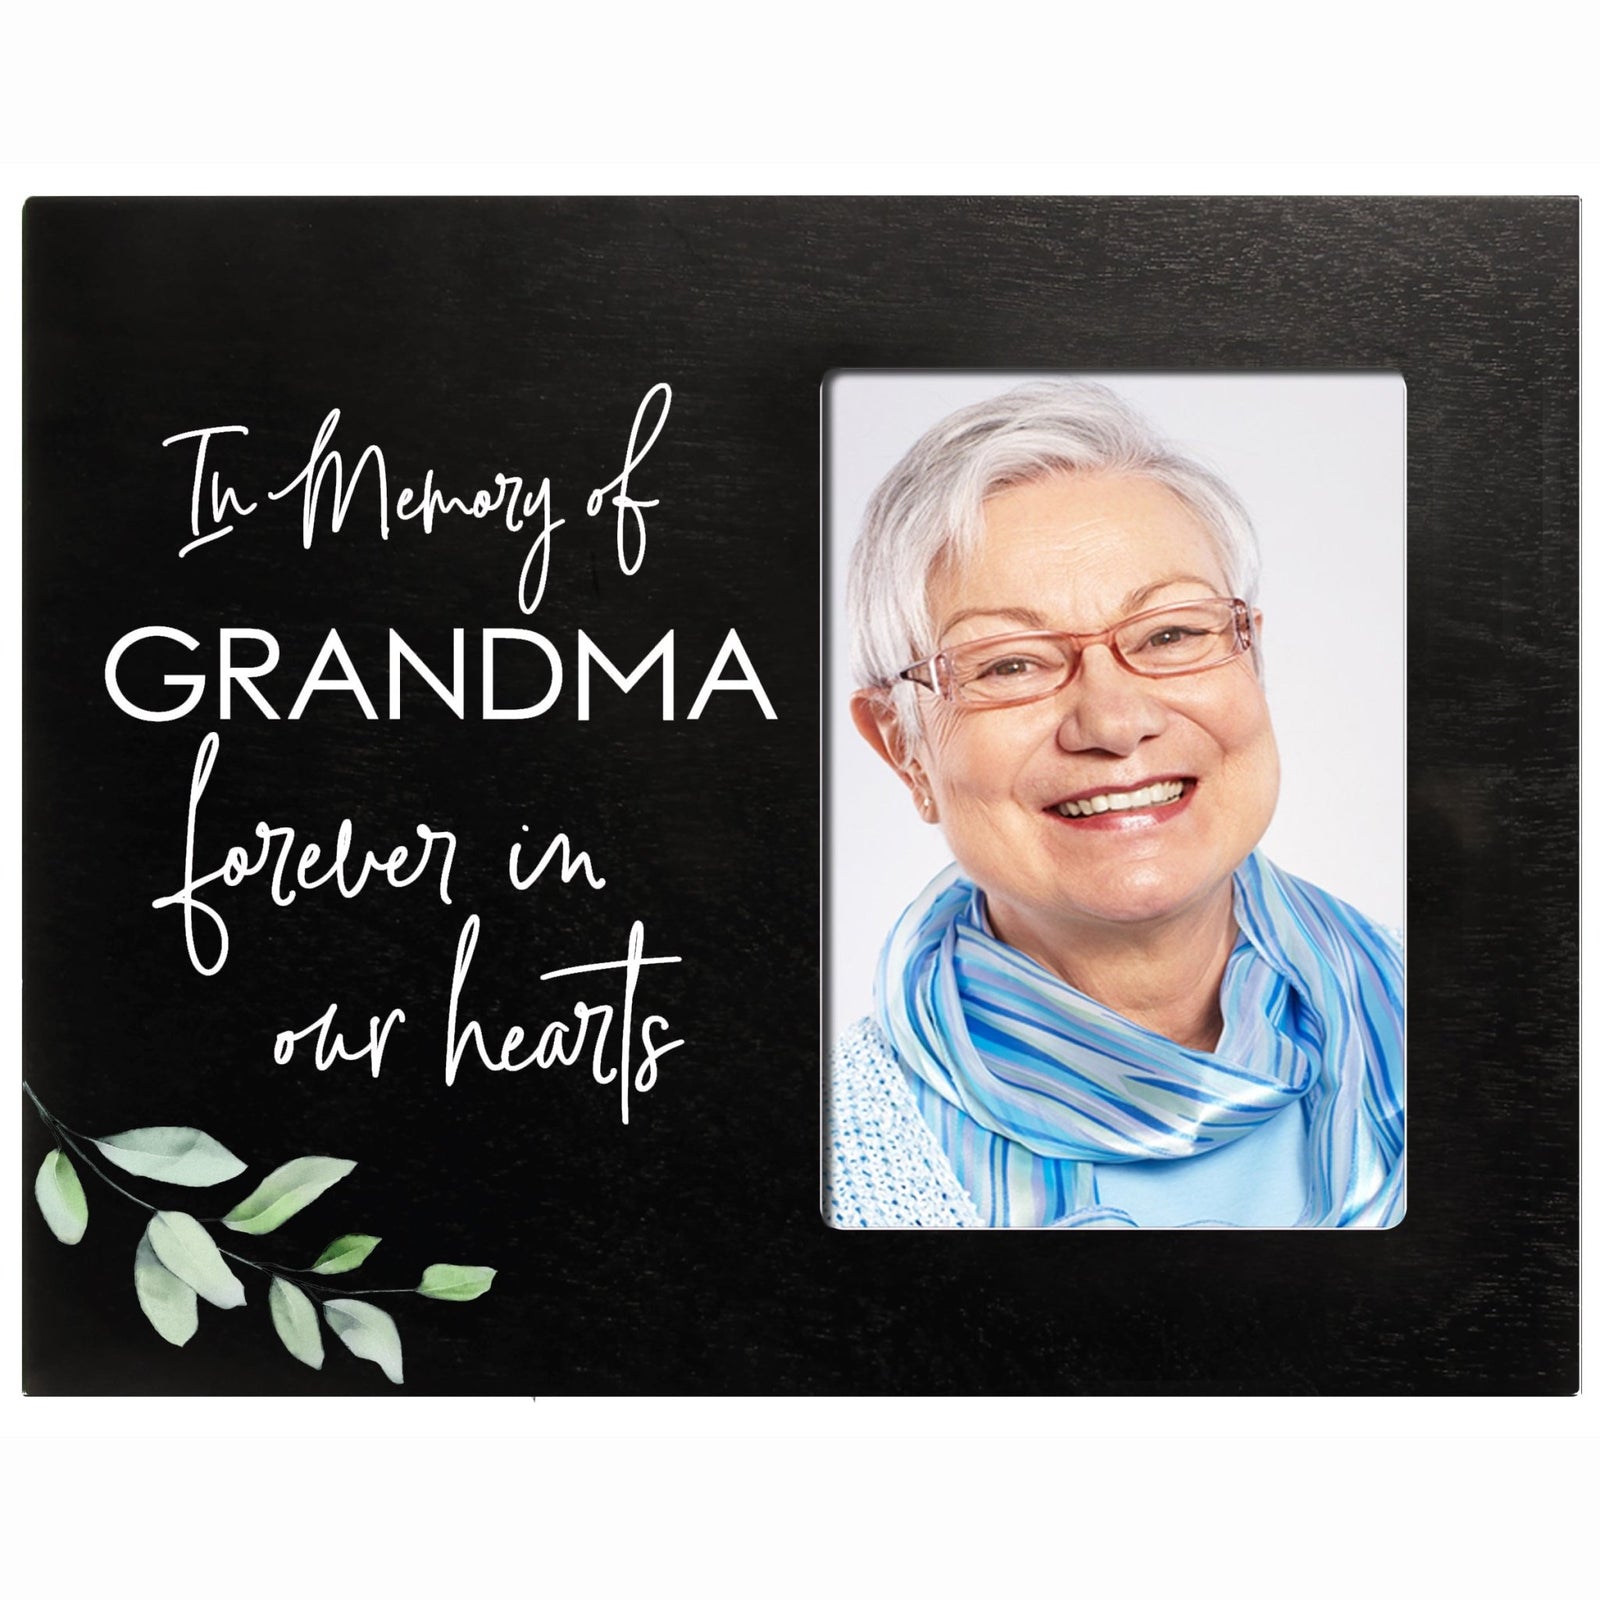 Sentimental Human Memorial Photo Frame Gift Bereavement Gift Idea - In memory of Grandma - LifeSong Milestones